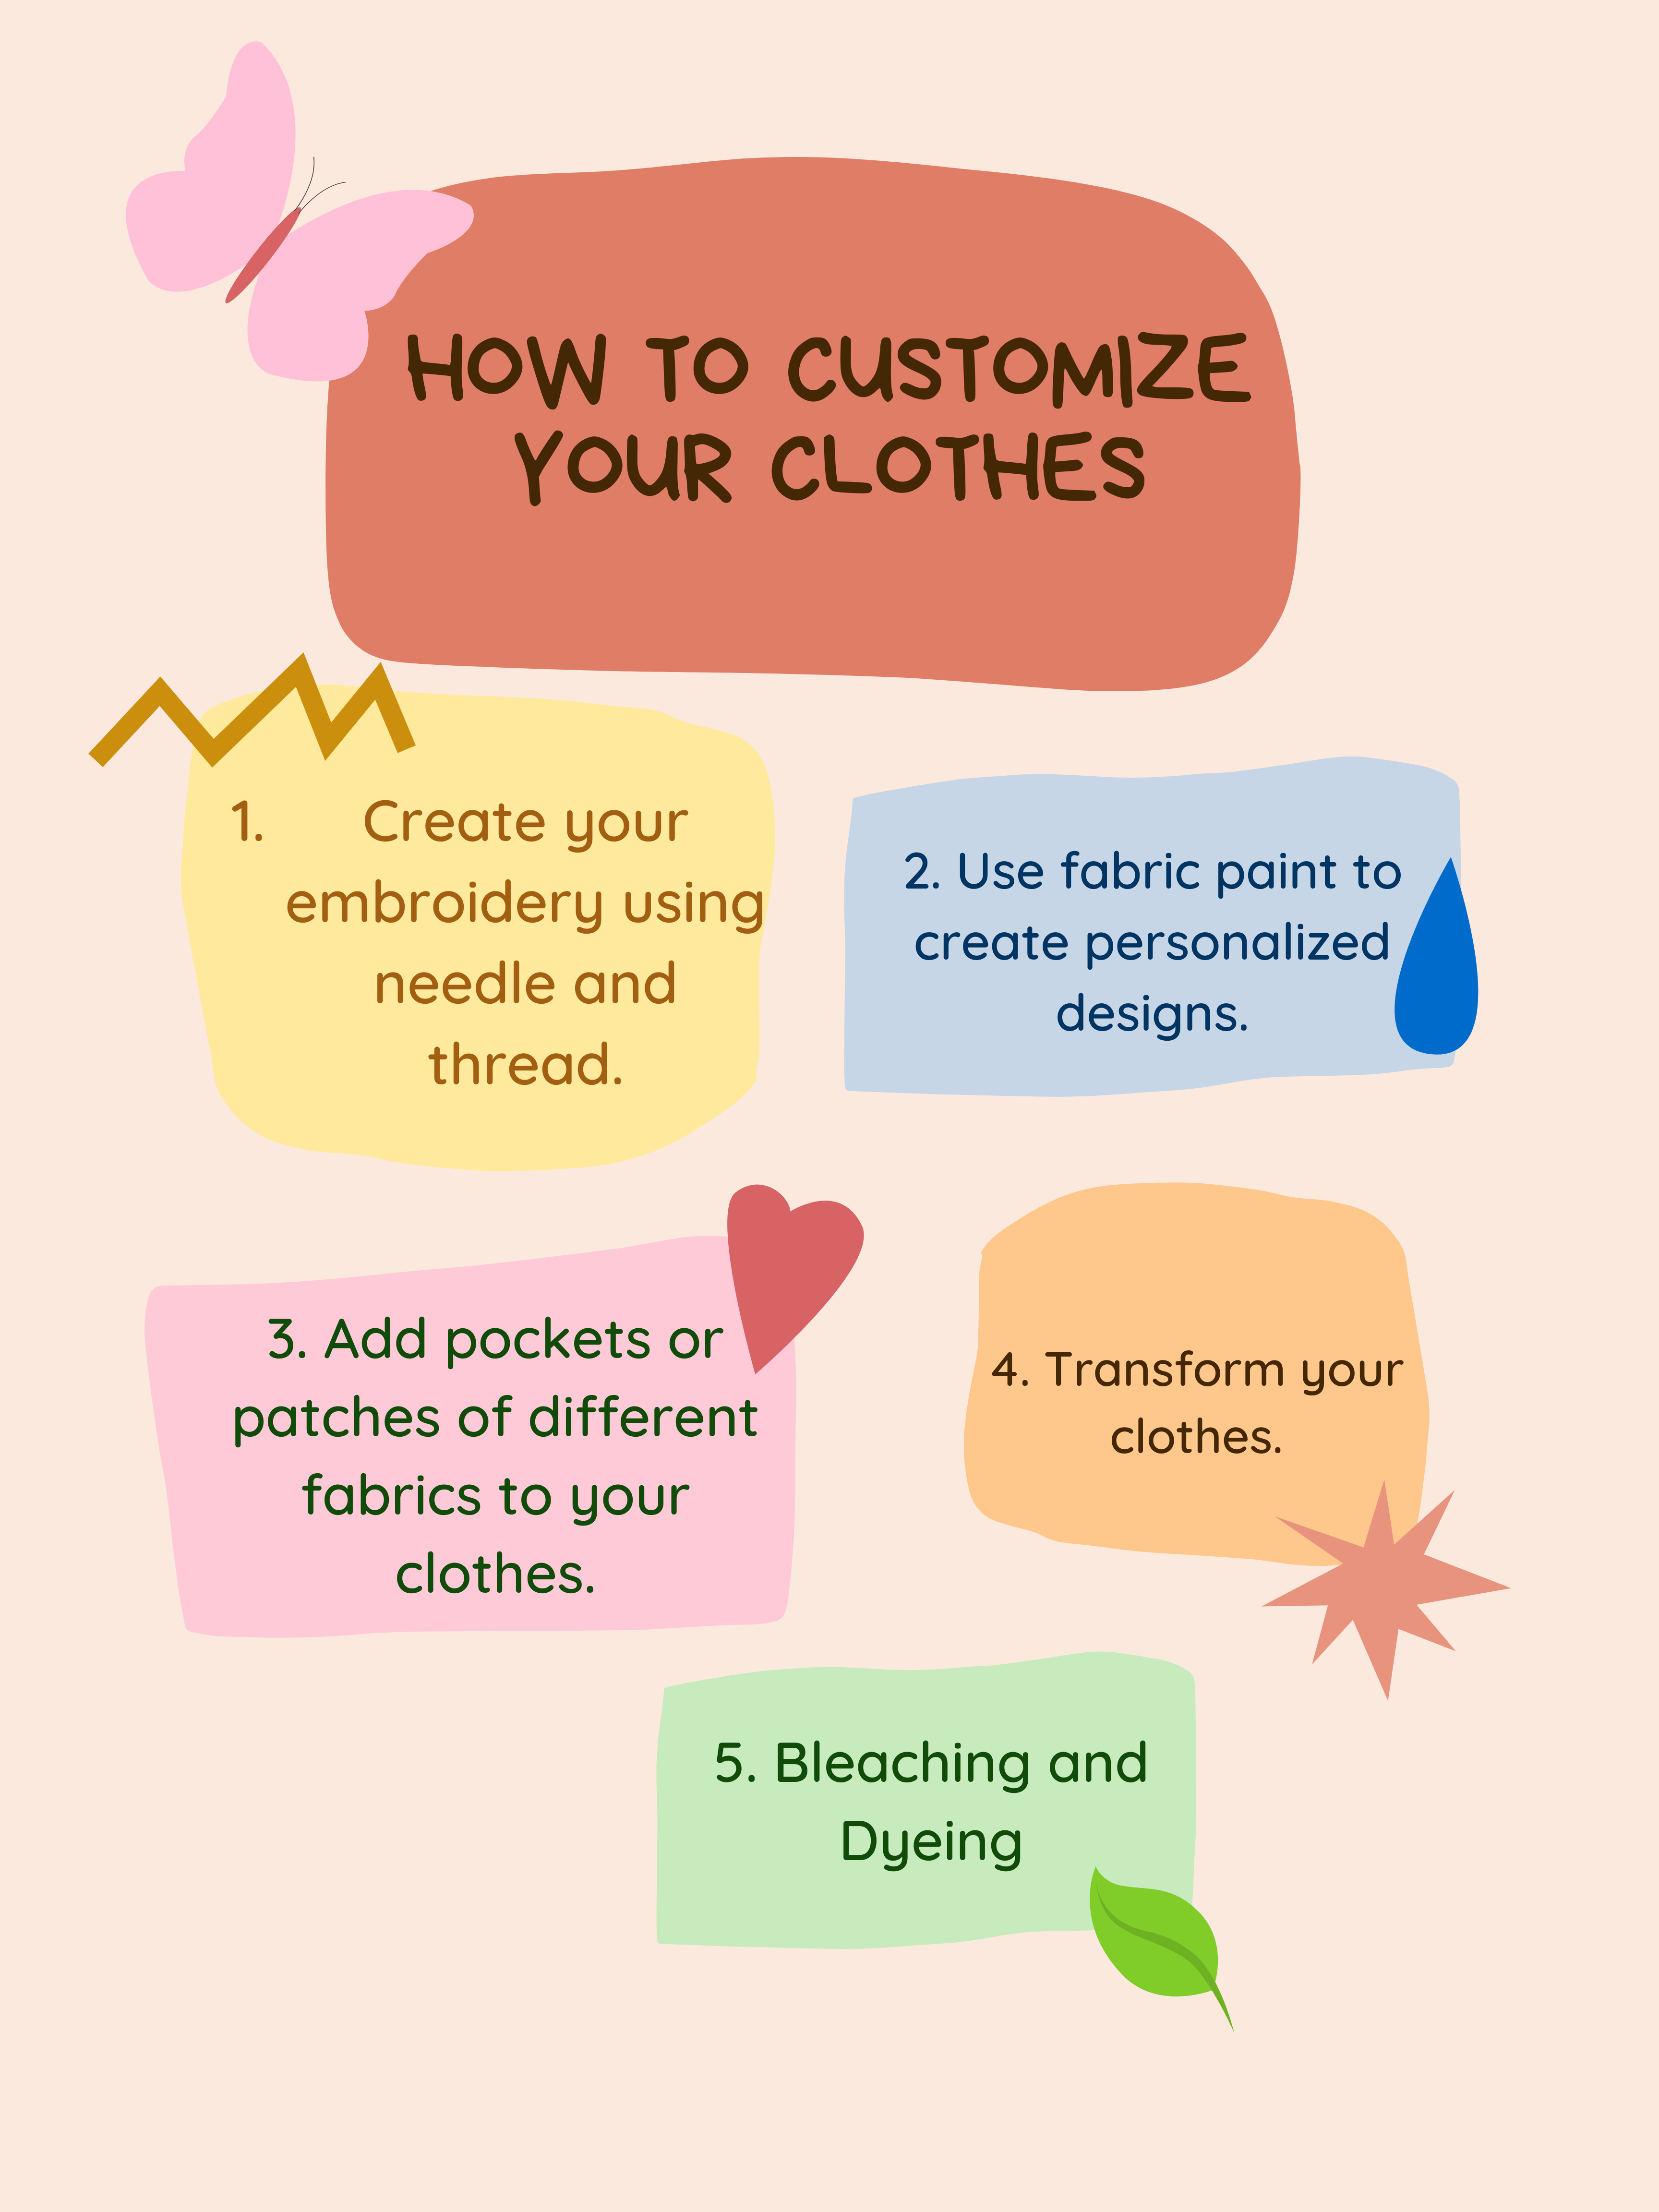 La imagen muestra una infografía con los pasos para poder customizar nuestra ropa usada.